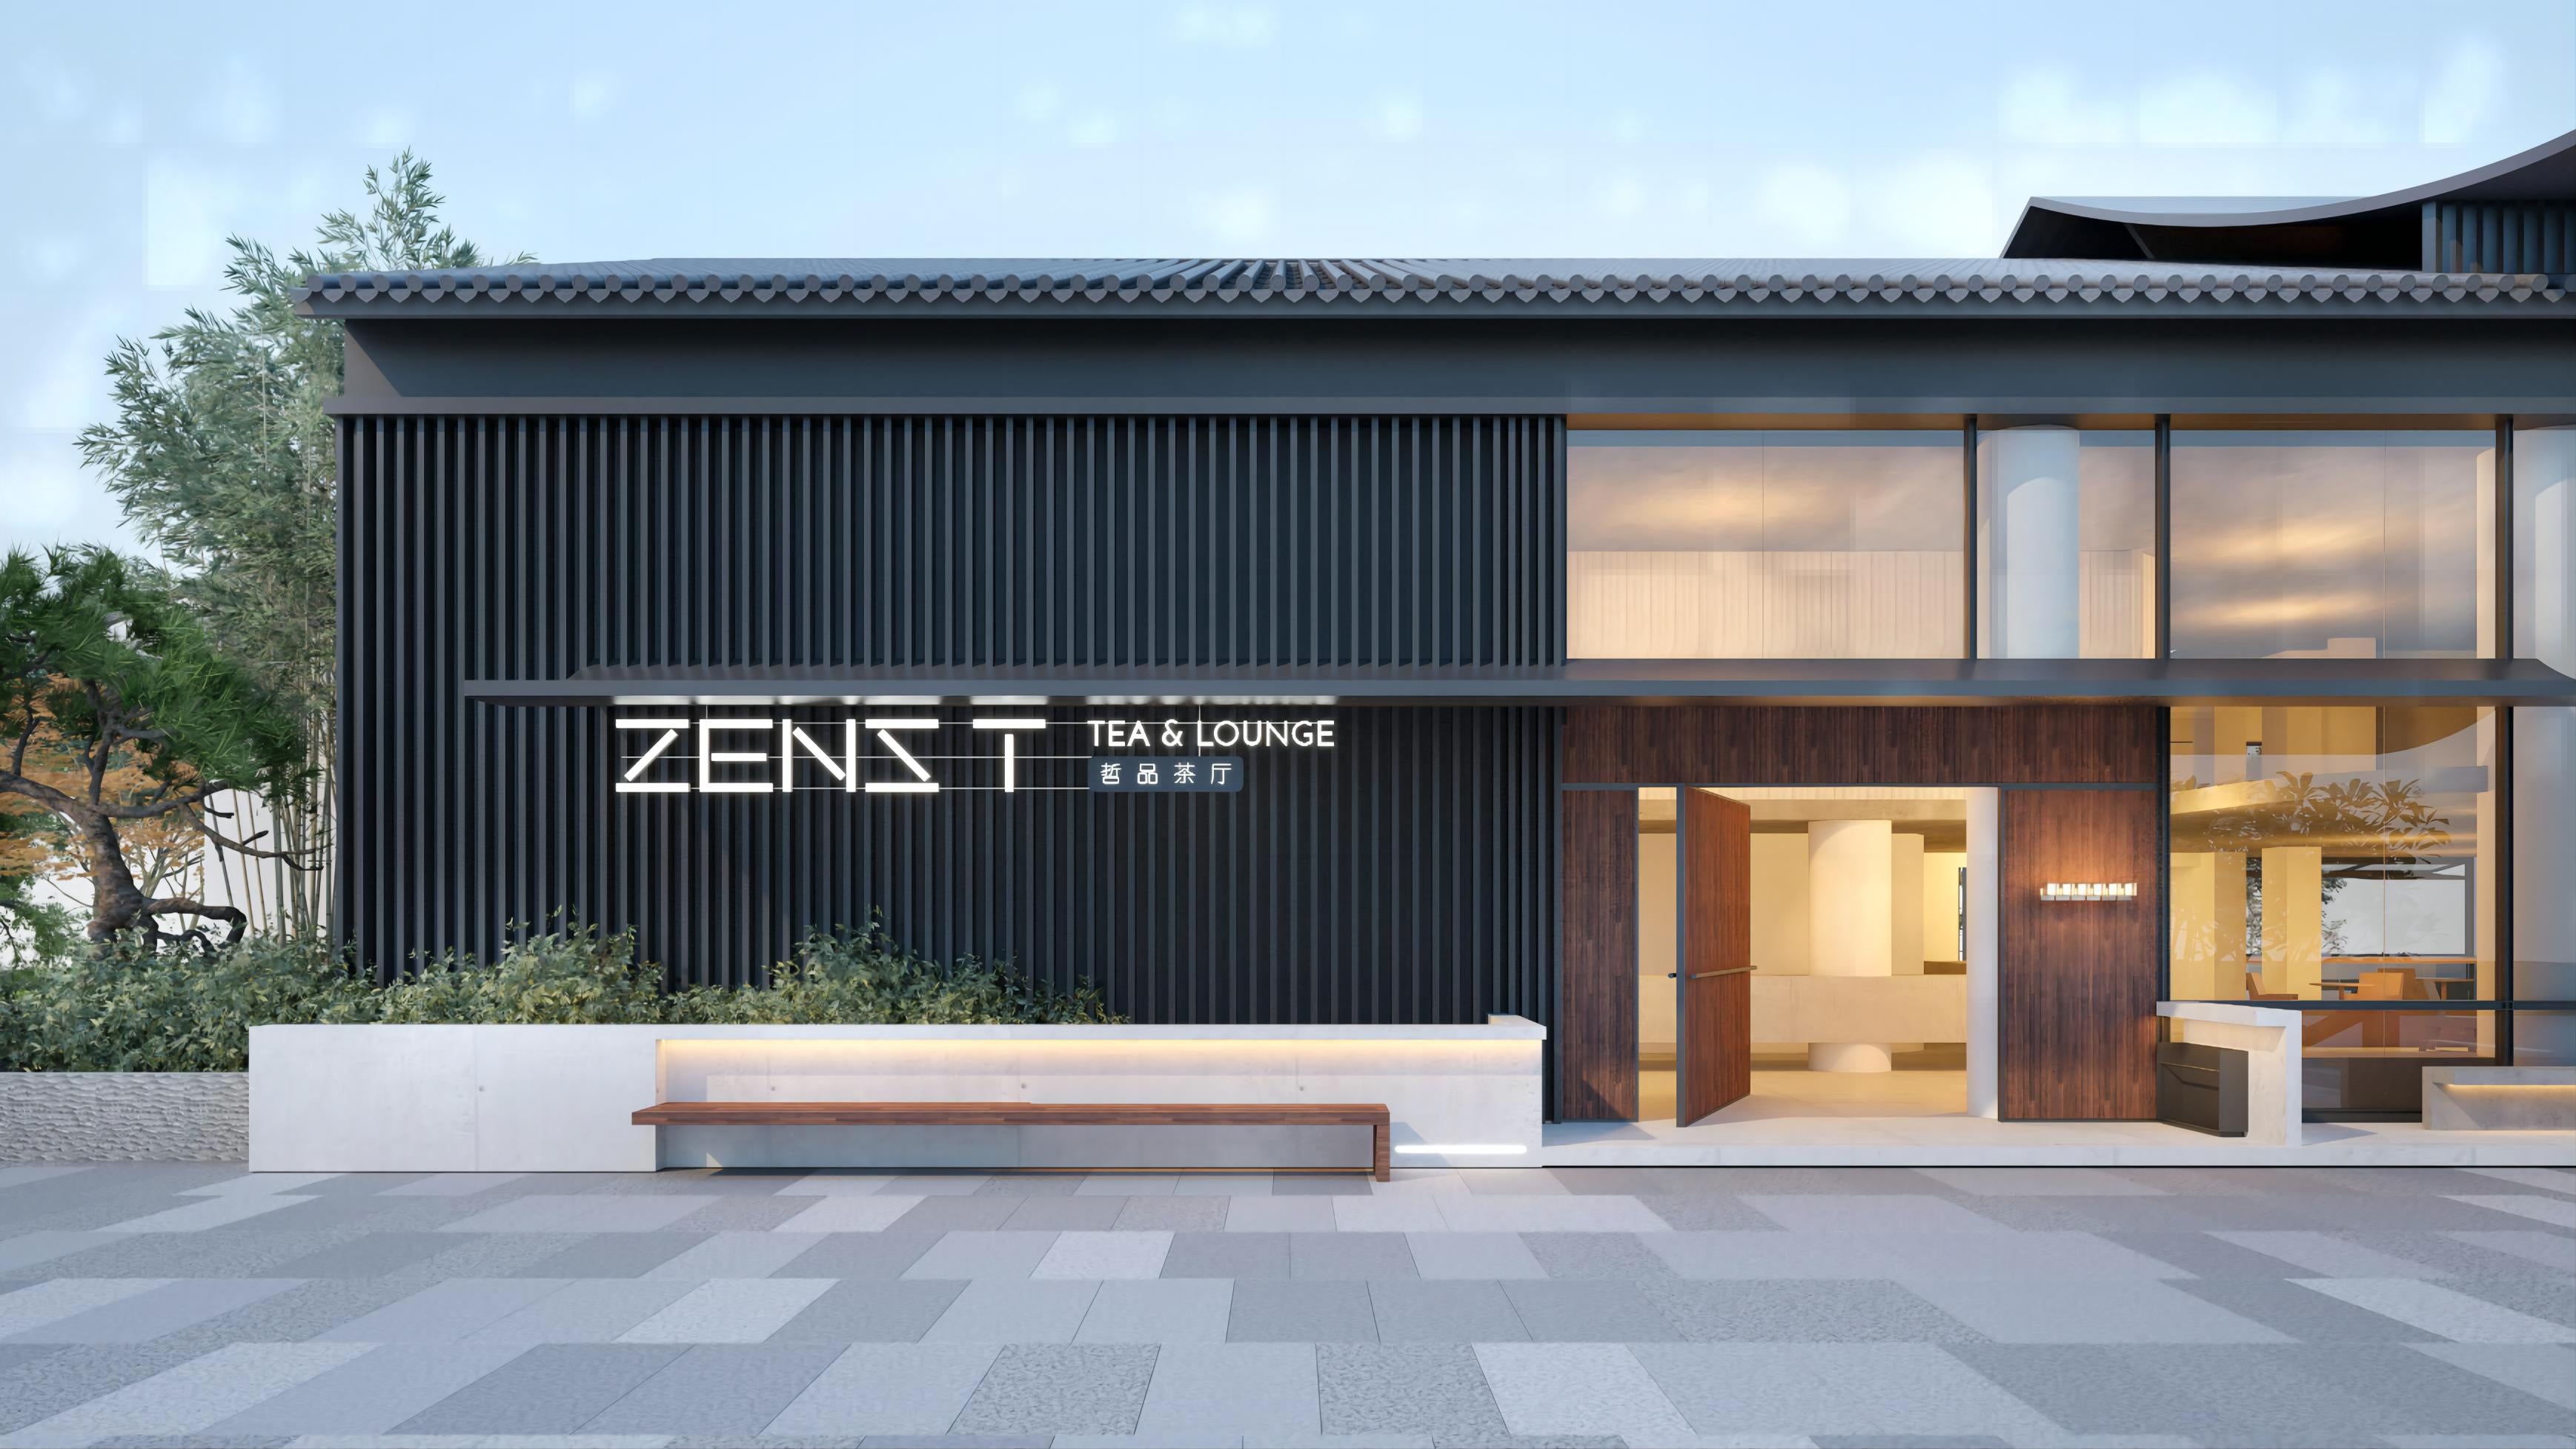 zens tea room